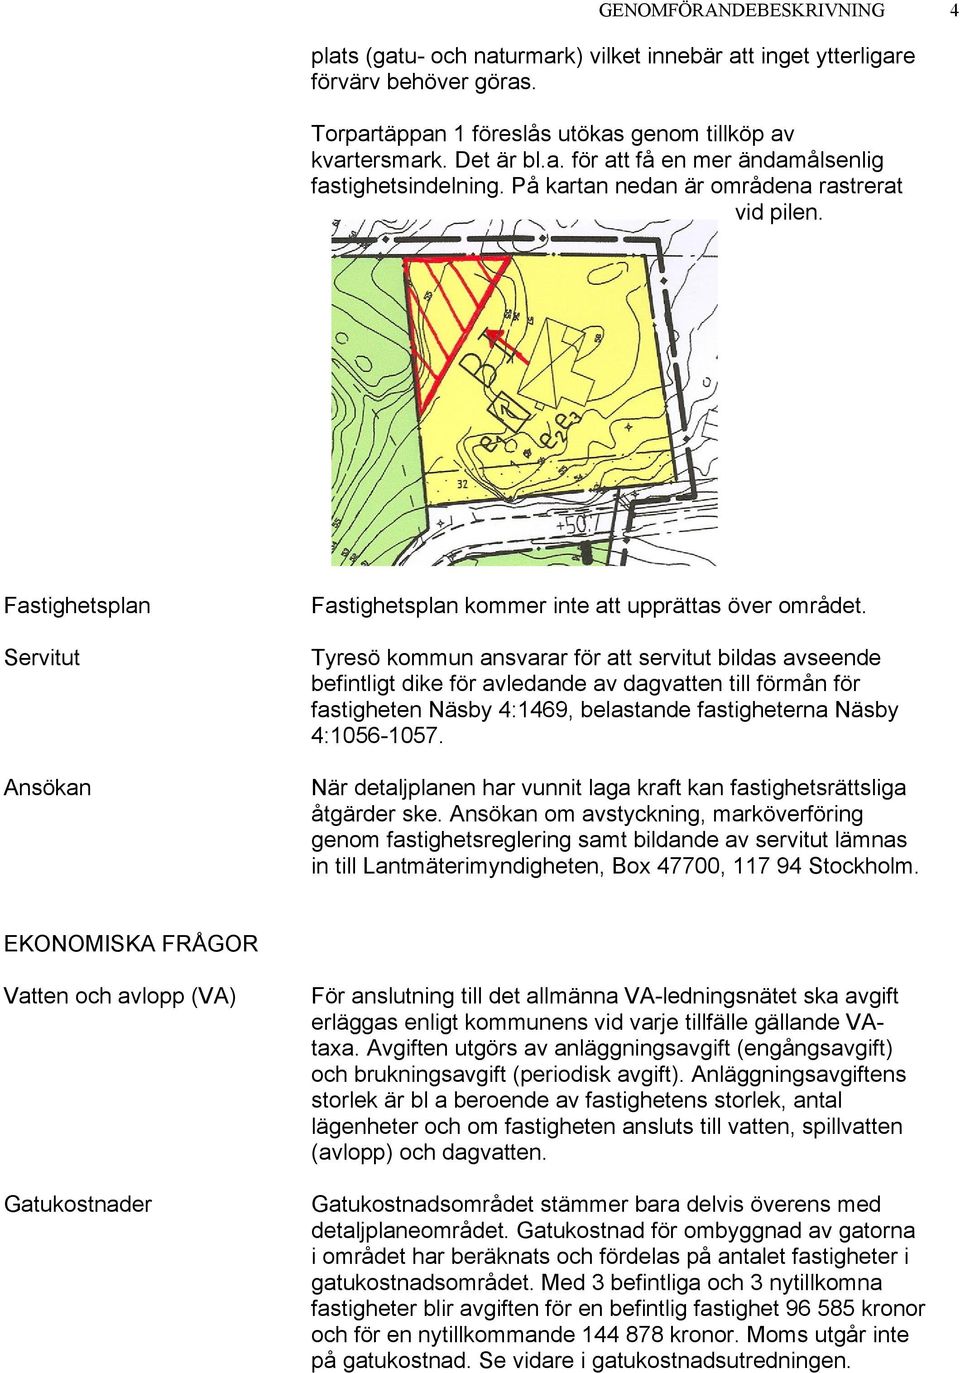 Tyresö kommun ansvarar för att servitut bildas avseende befintligt dike för avledande av dagvatten till förmån för fastigheten Näsby 4:1469, belastande fastigheterna Näsby 4:1056-1057.